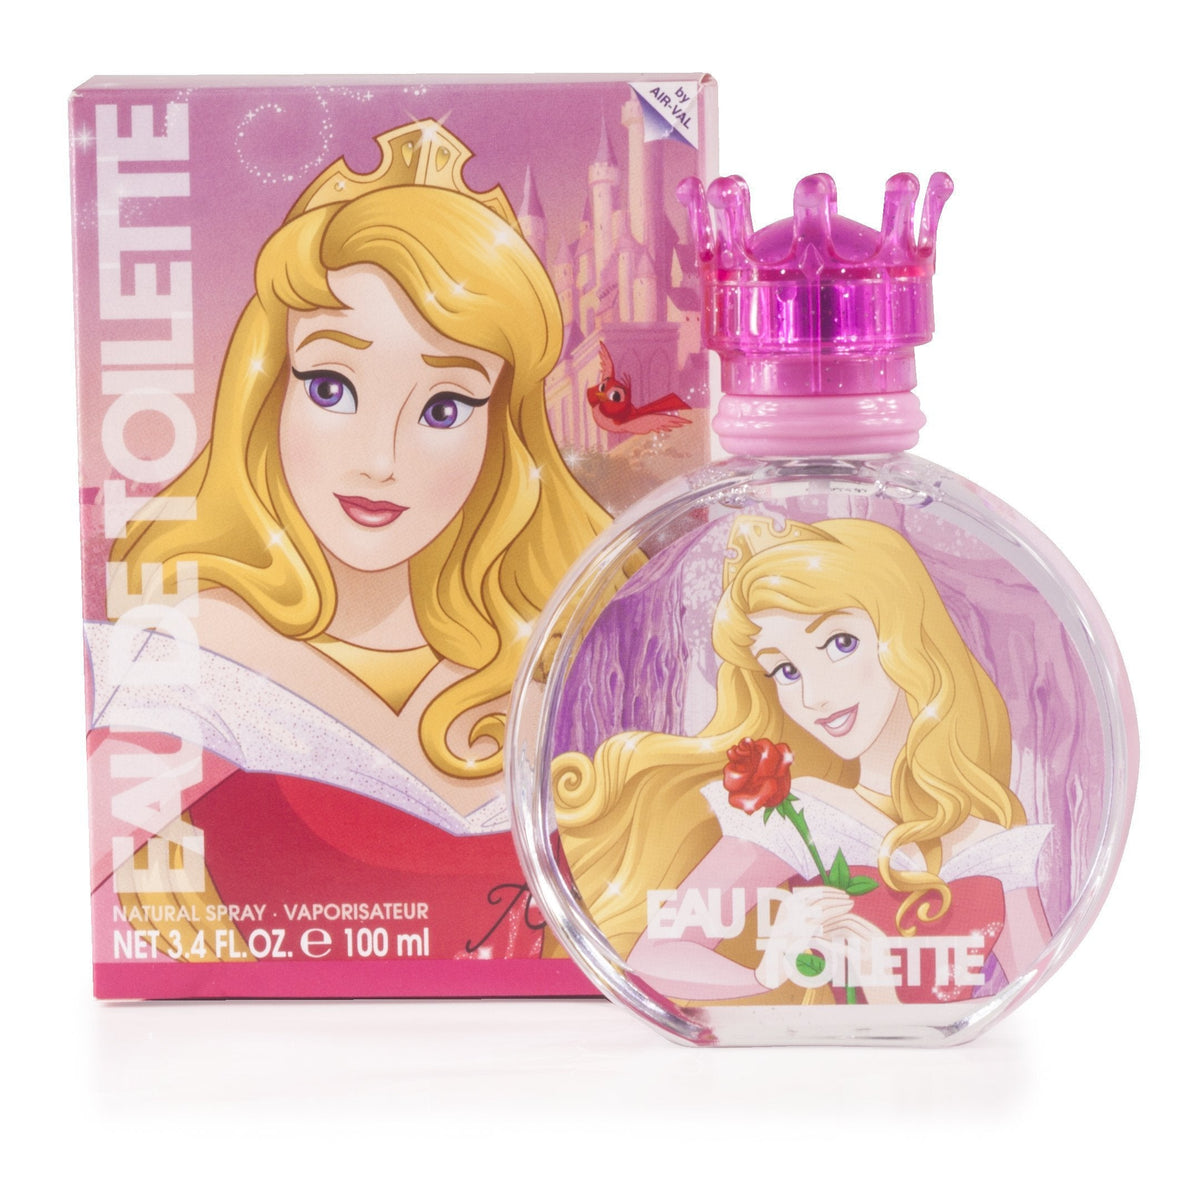 Sleeping Beauty Eau de Toilette Spray for Girls by Disney 3.4 oz.